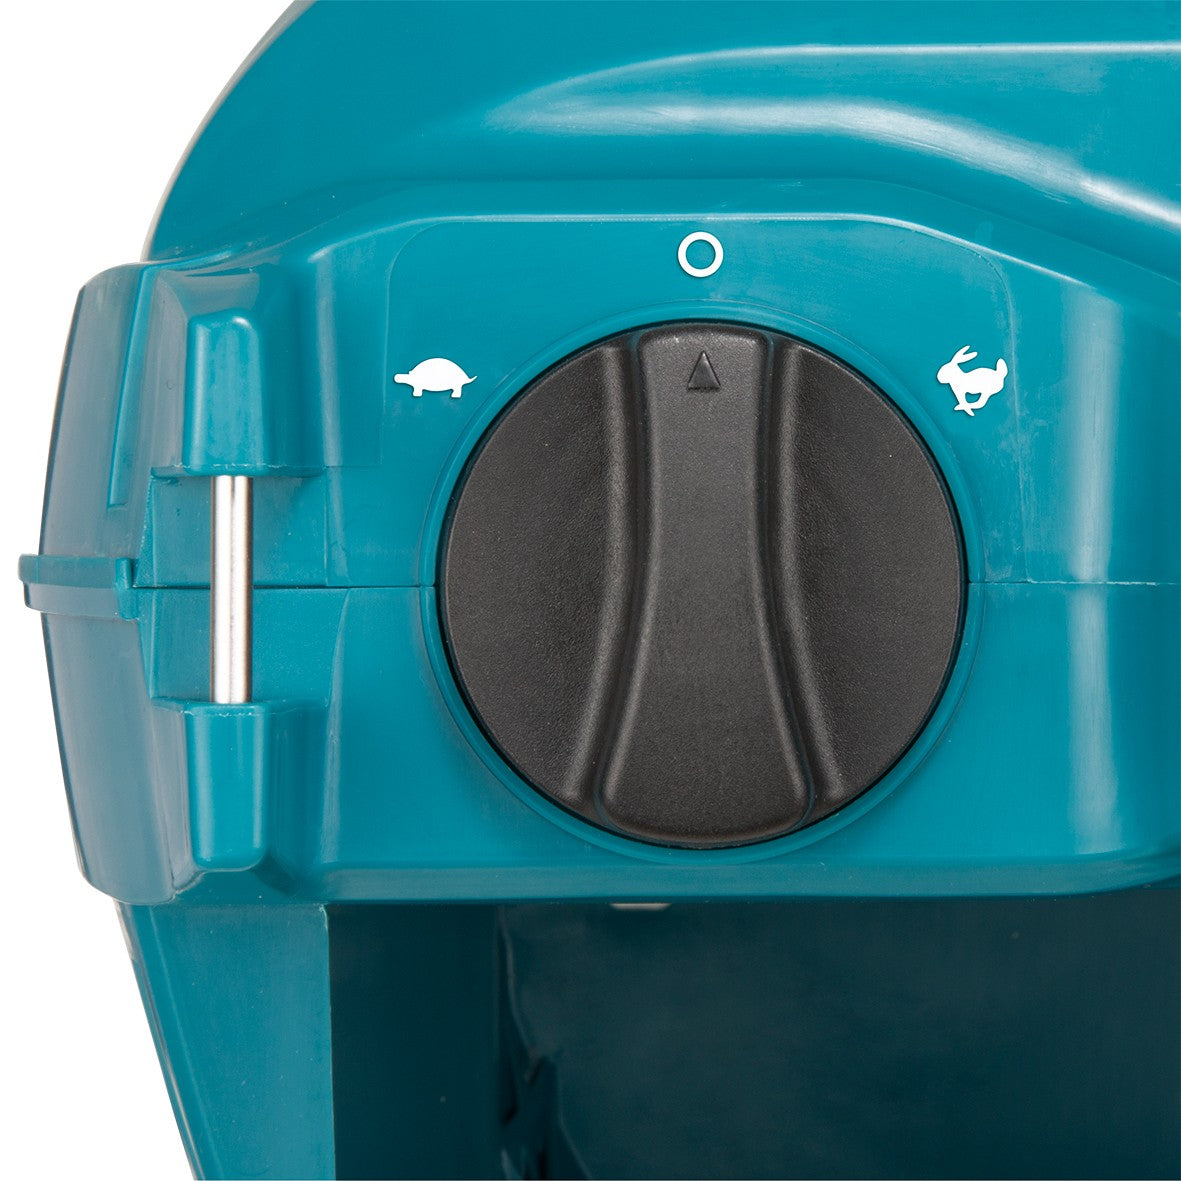 36V (18V x 2) Brushless Pressure Washer Kit DHW080PT2 by Makita